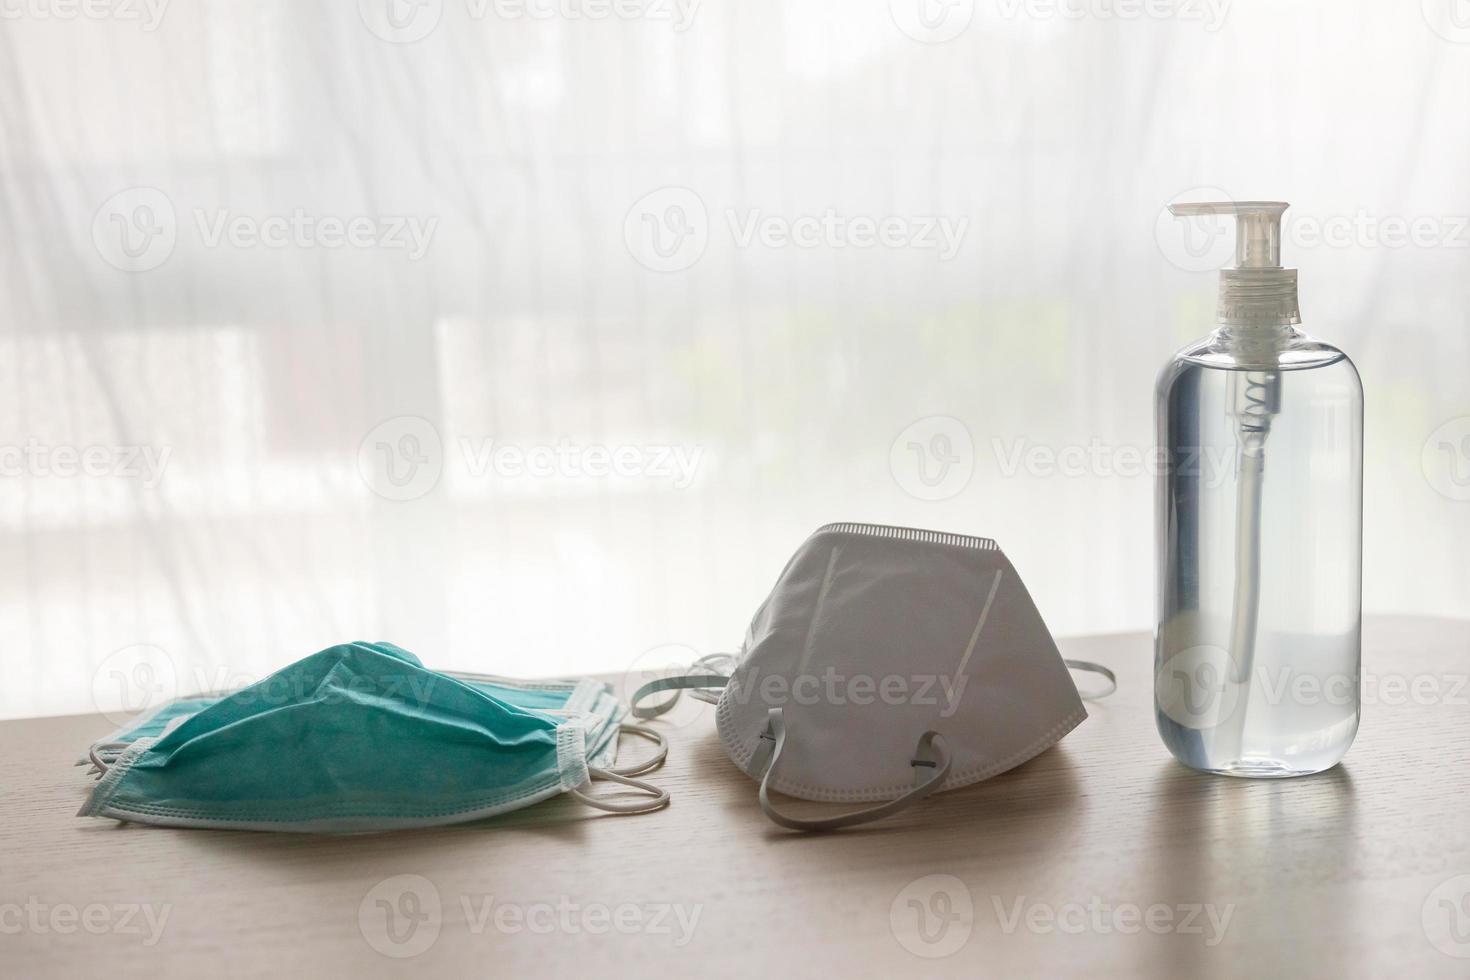 mascarilla médica con gel desinfectante de alcohol lavado a mano en mesa de madera para el concepto de prevención del coronavirus covid-19 foto